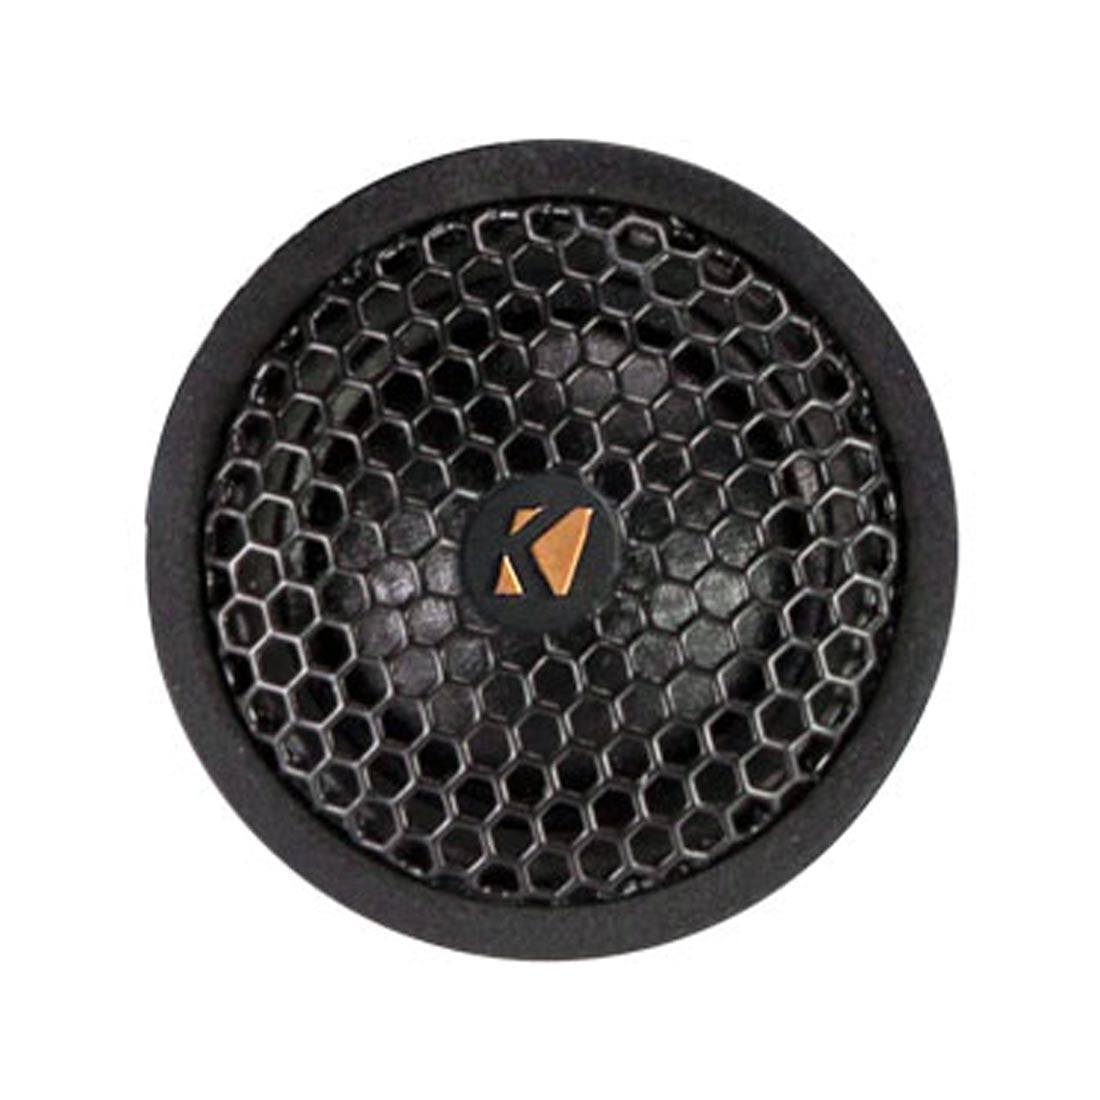 Kicker 51KSS6804 KS Series 6x8" Component Speaker System tweeter